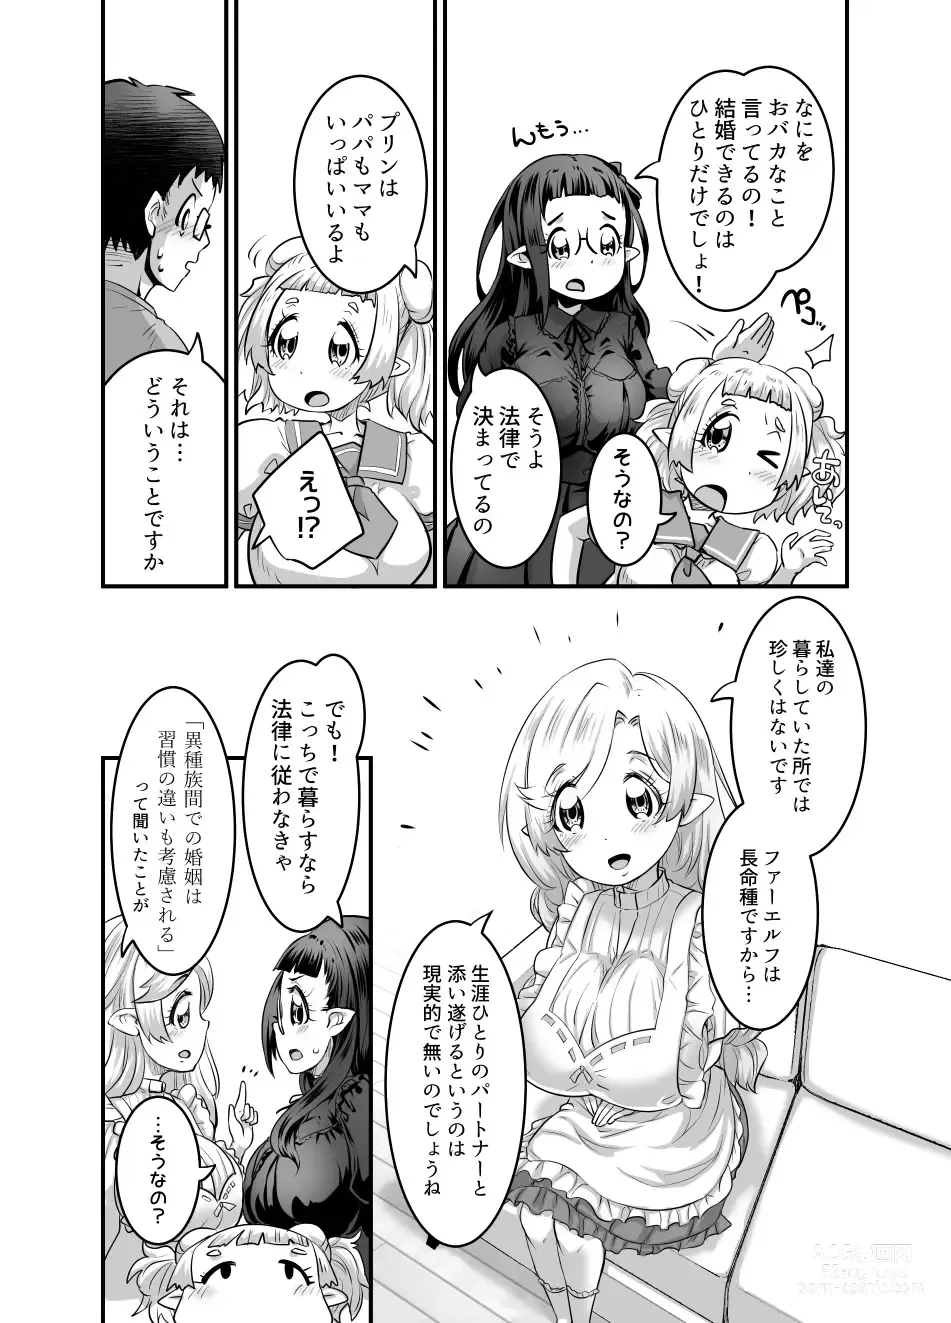 Page 254 of doujinshi Oppai Loli Elf-chan no Konkatsu